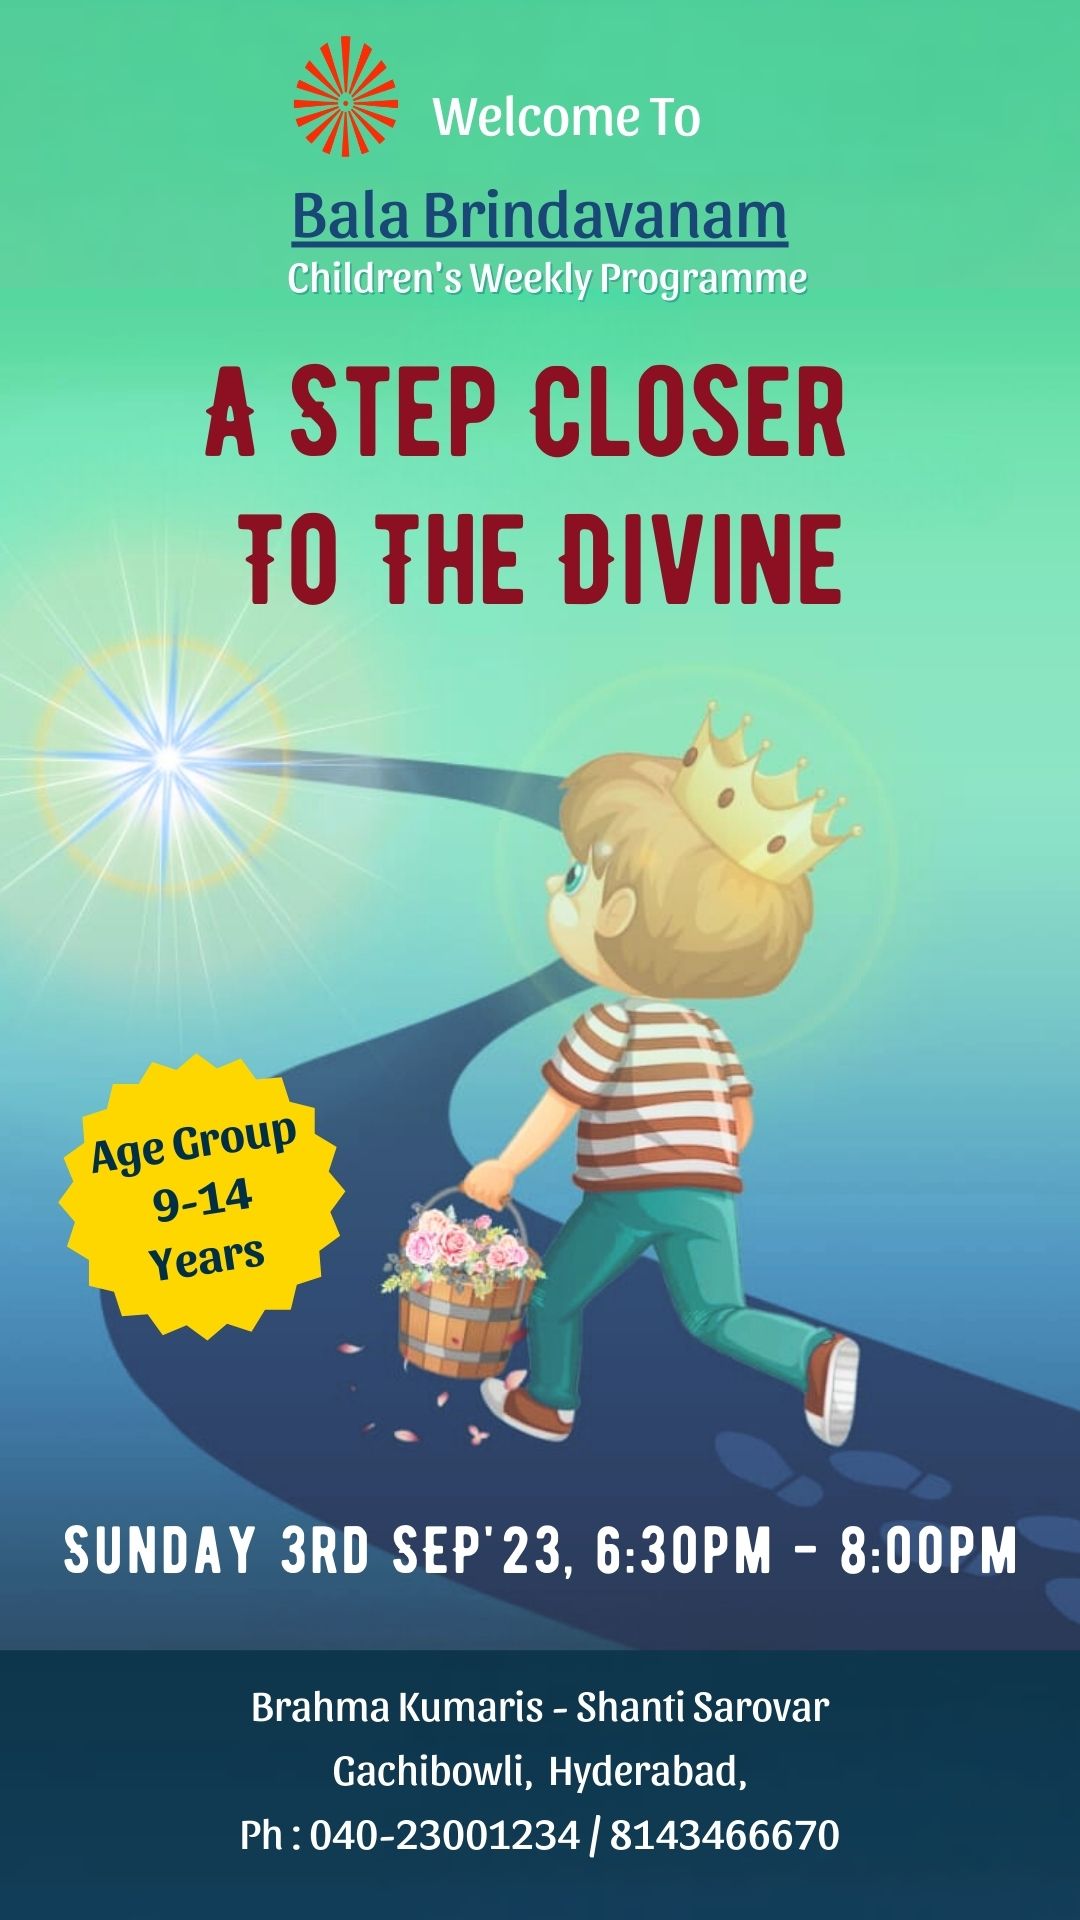 A step closer to the divine